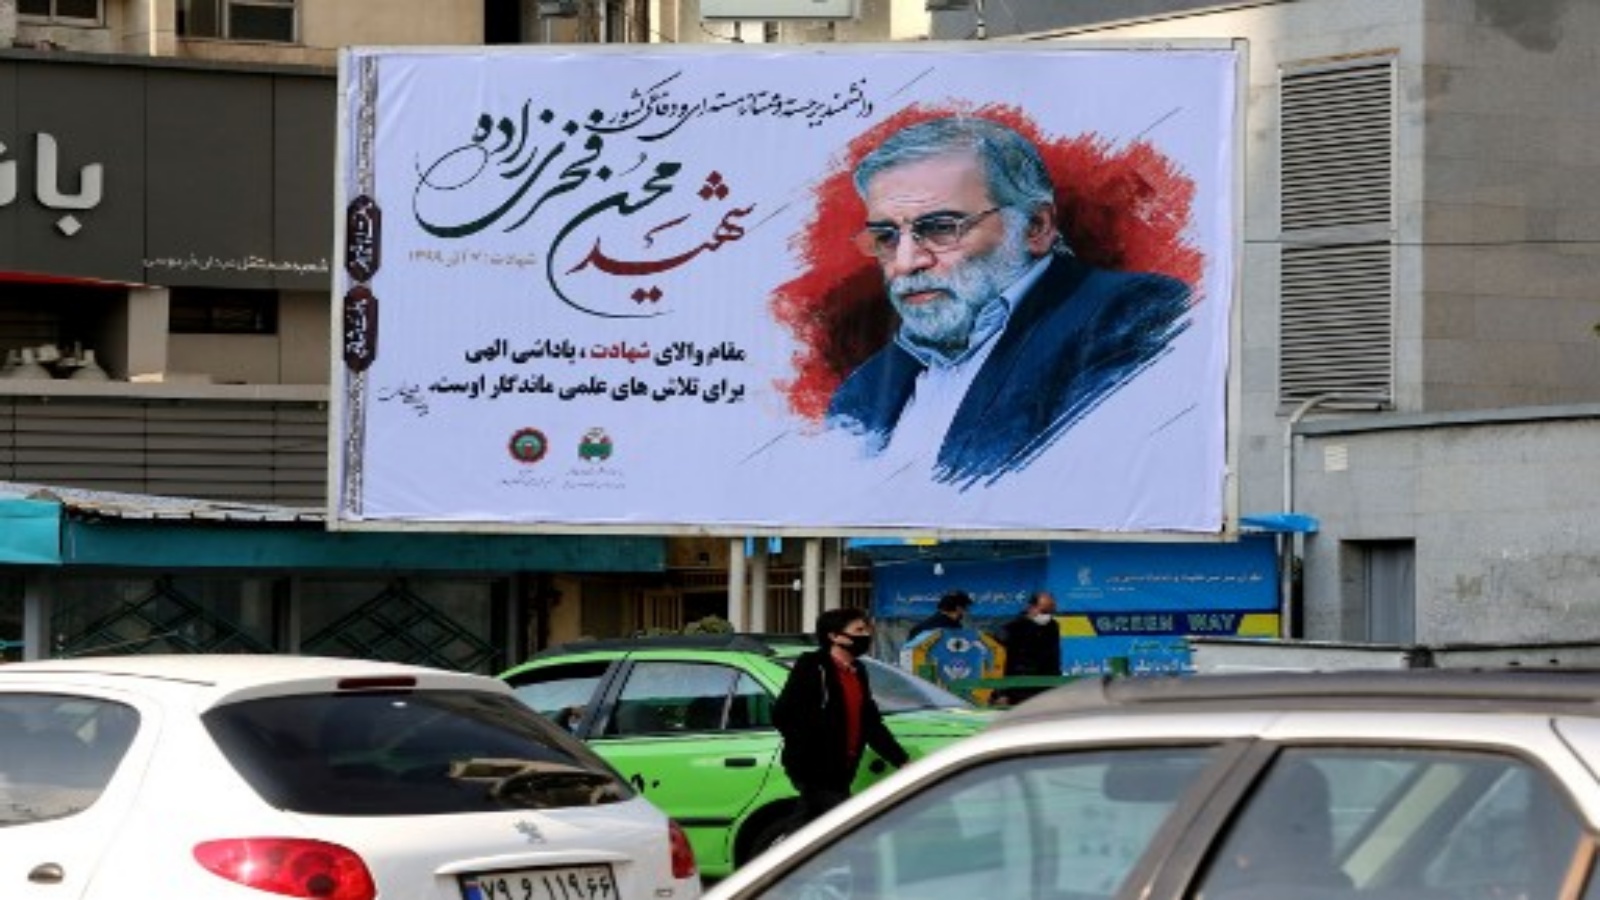 سيارات تسير بجانب لوحة إعلانية تكريما للعالم النووي المقتول محسن فخري زاده في العاصمة الإيرانية طهران ، في 30 نوفمبر 2020